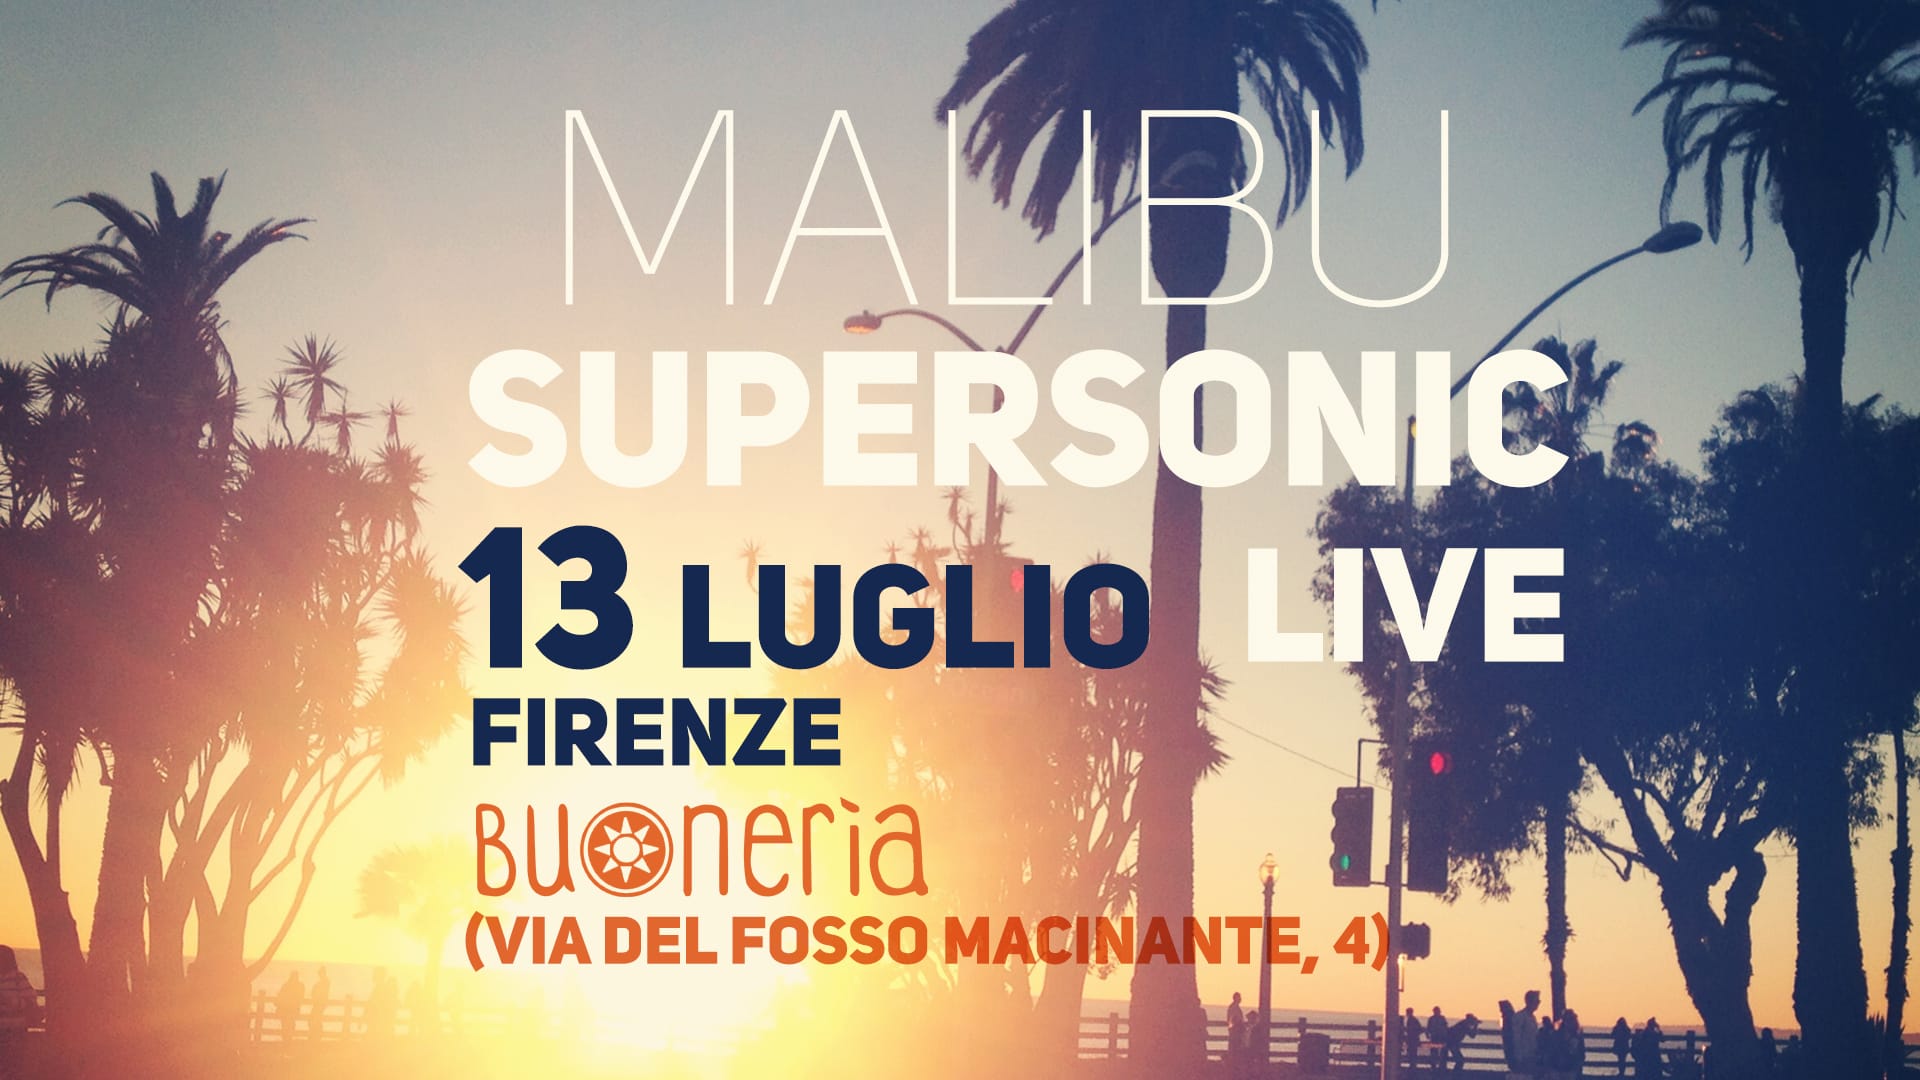 Controradio presenta: Malibu Super Sonic live alla Buonerìa di Firenze